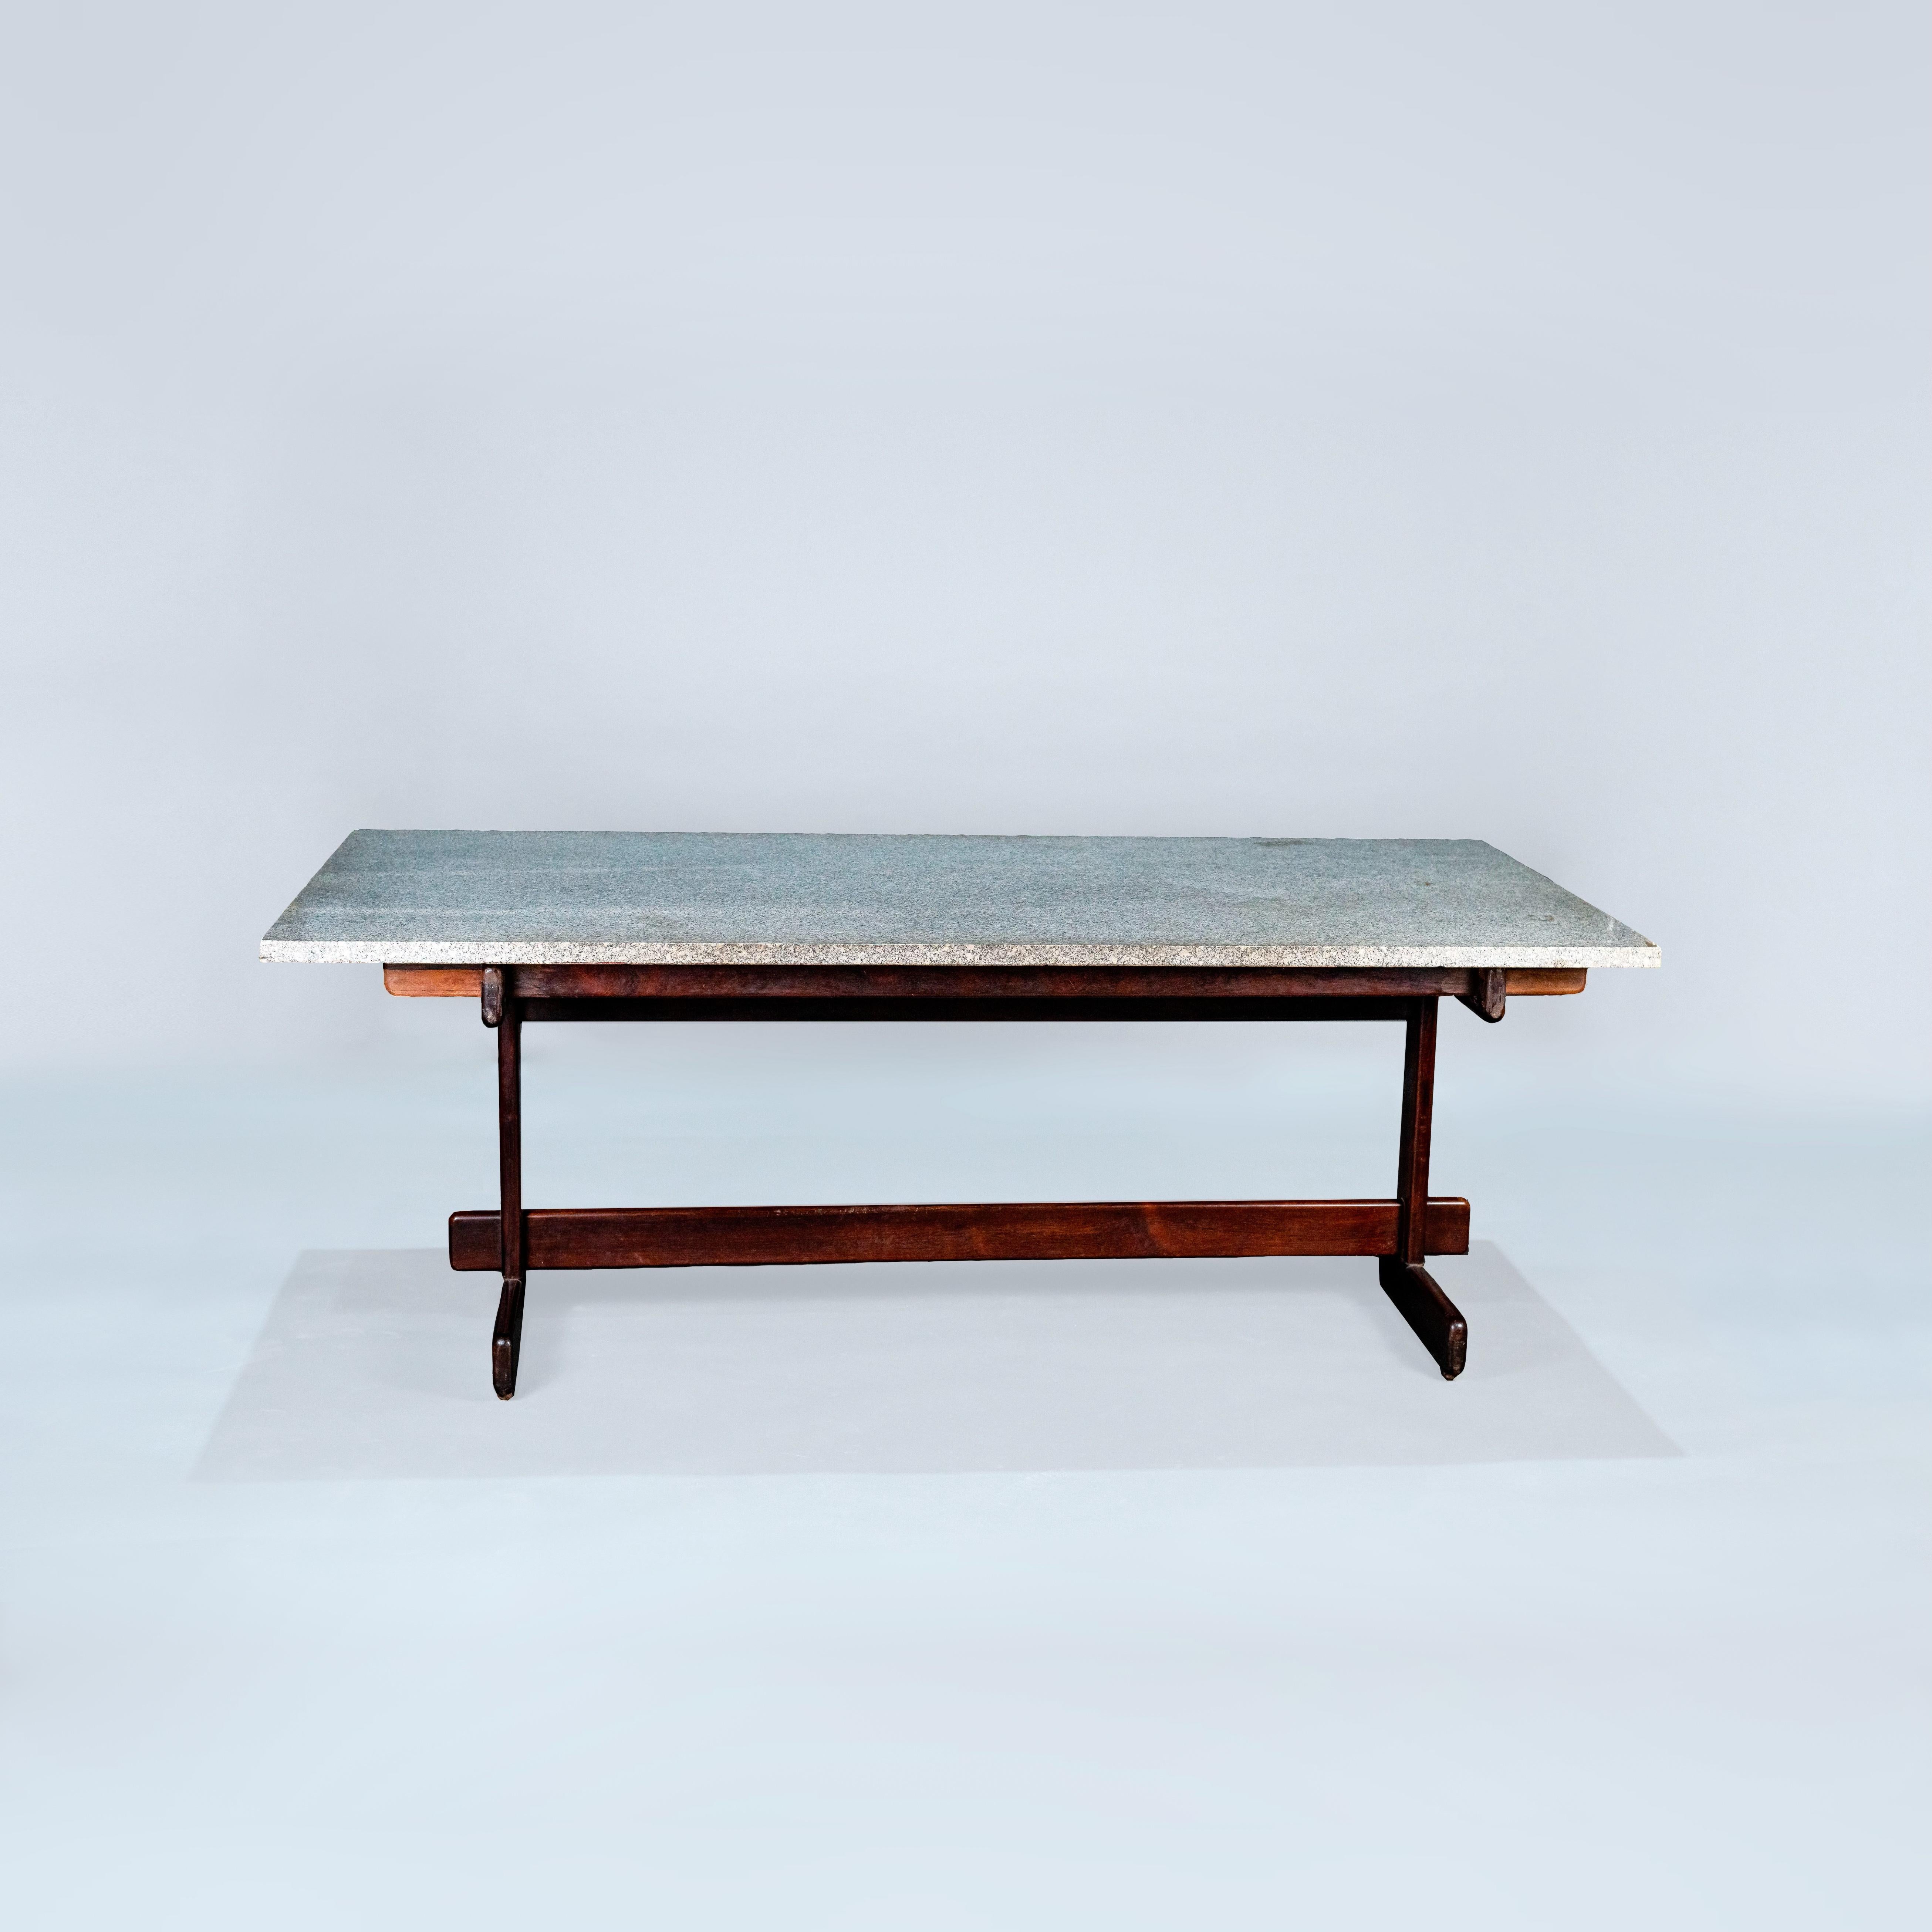 Dieser elegante Esstisch aus der Werkstatt von Moveis Cantu aus dem Jahr 1968 ist ein bemerkenswertes Stück, das zeitlosen Stil und außergewöhnliche handwerkliche Qualität vereint.

Der Tisch trägt mit Stolz das originale Label der Werkstatt, das